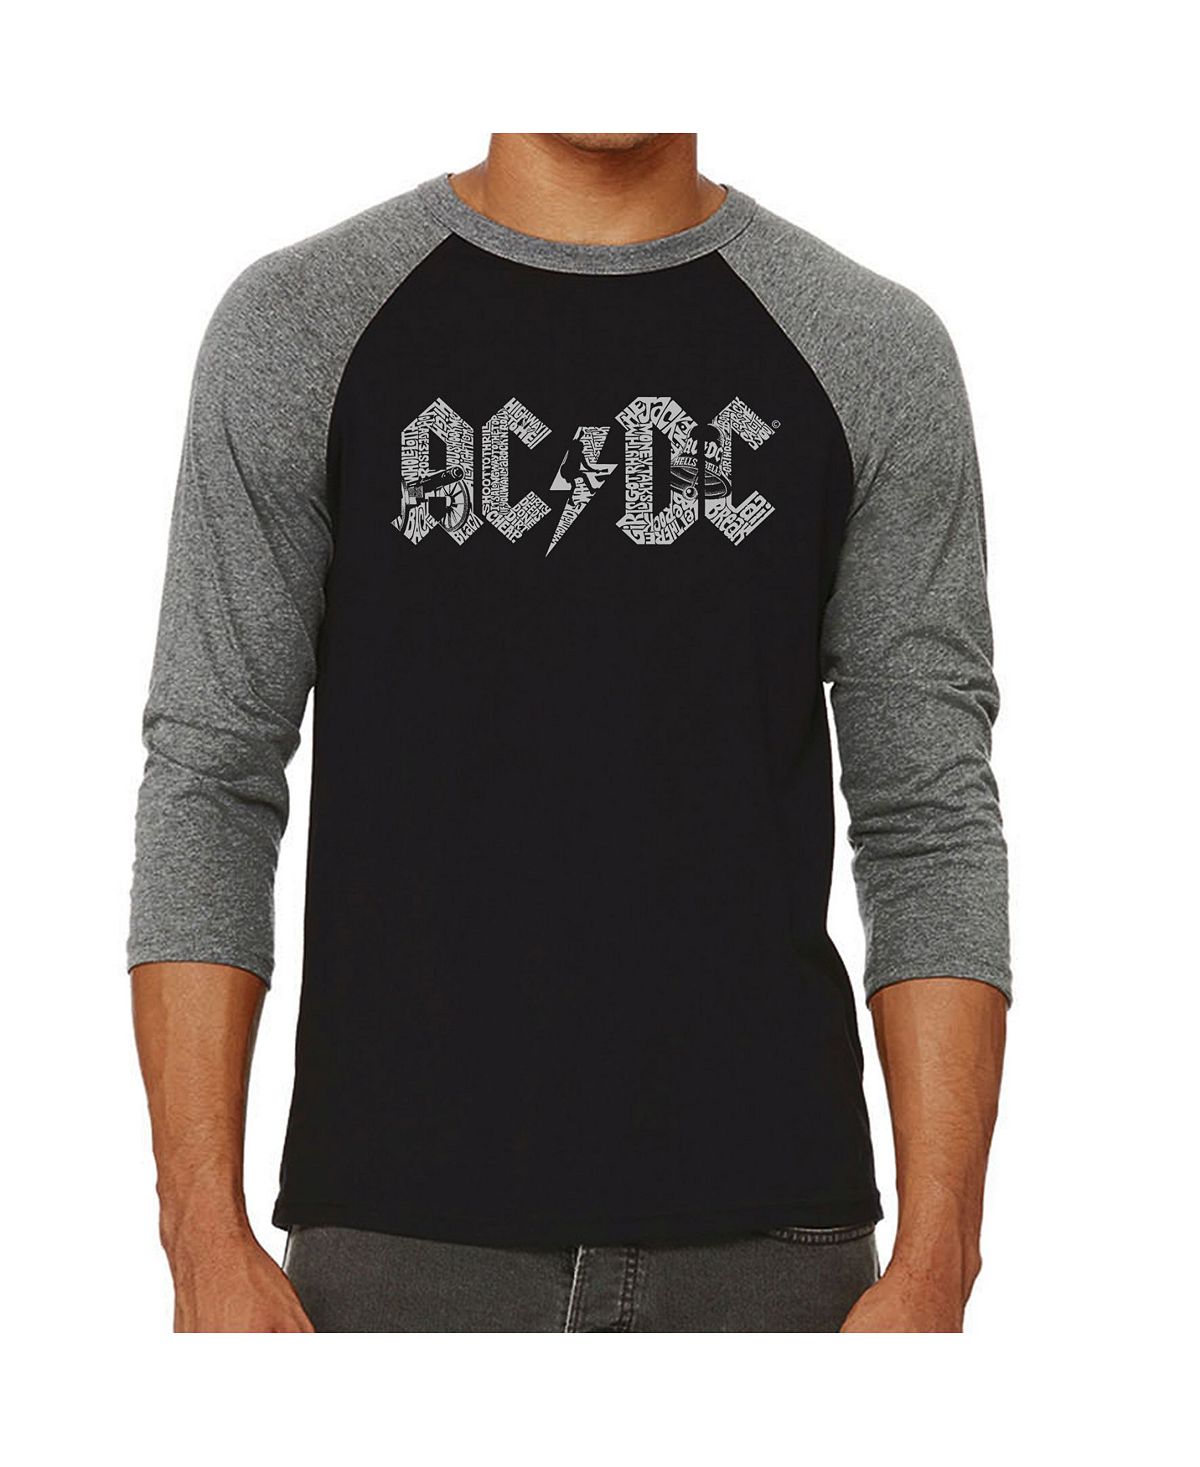 Мужская футболка с регланом ac/dc word art LA Pop Art, серый